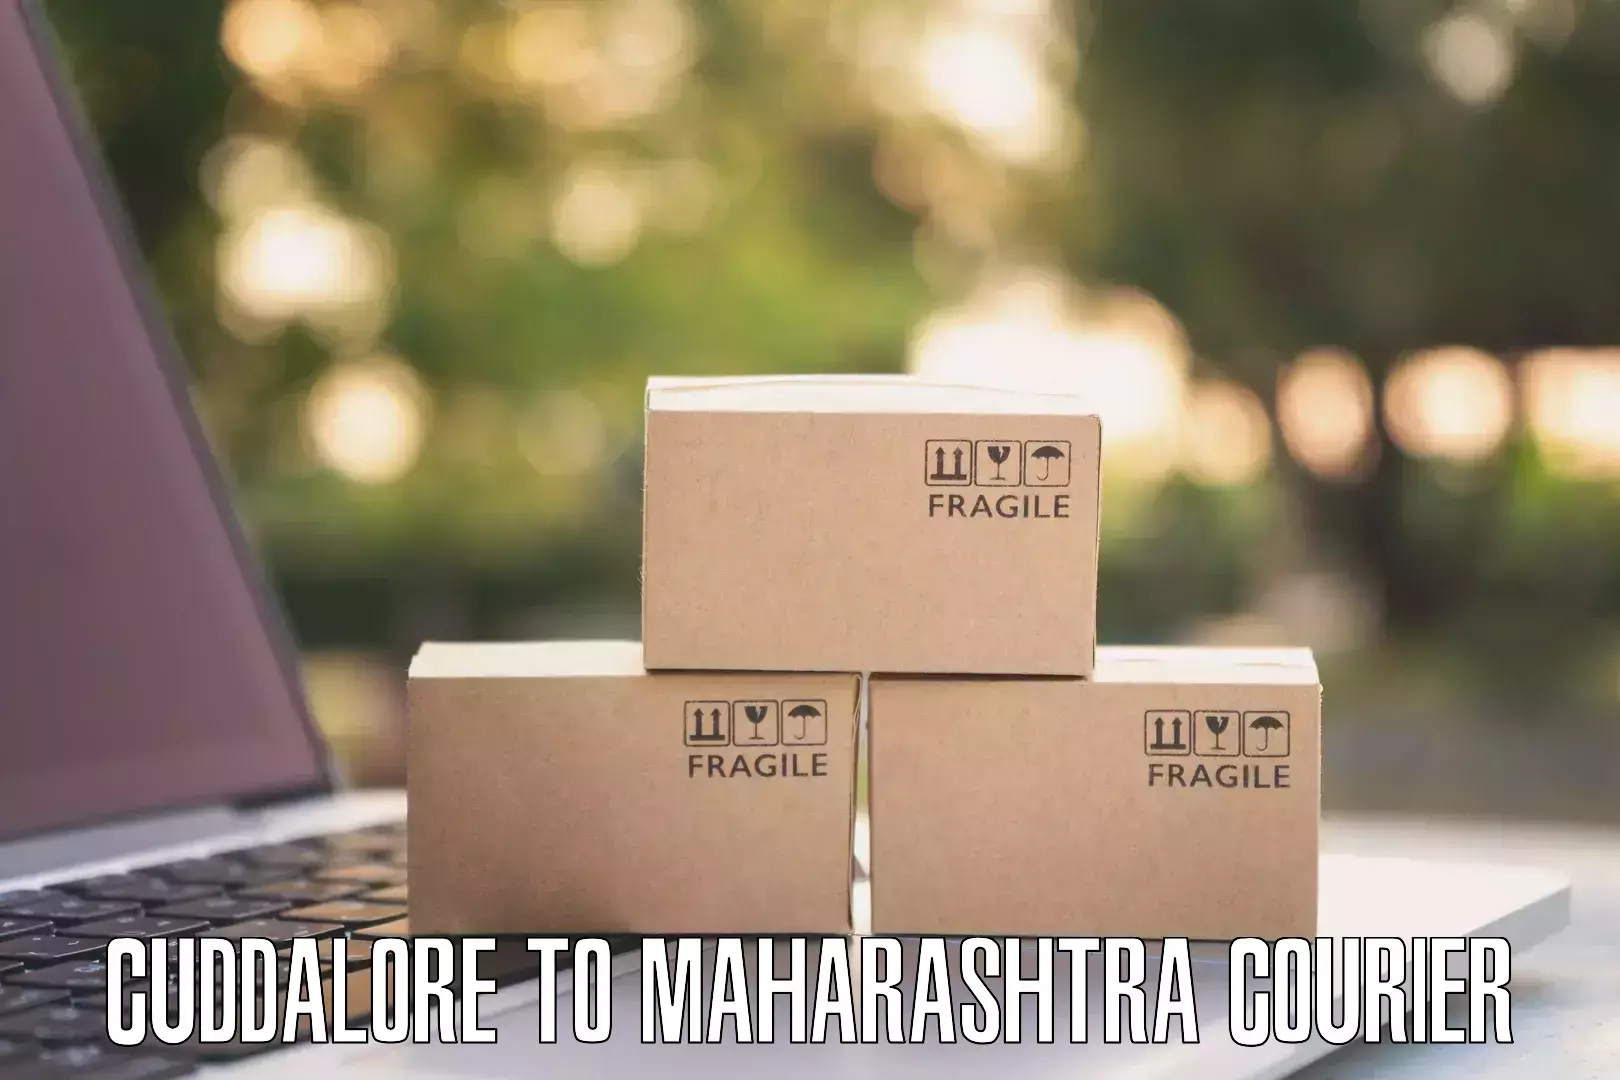 Multi-city courier in Cuddalore to Navi Mumbai